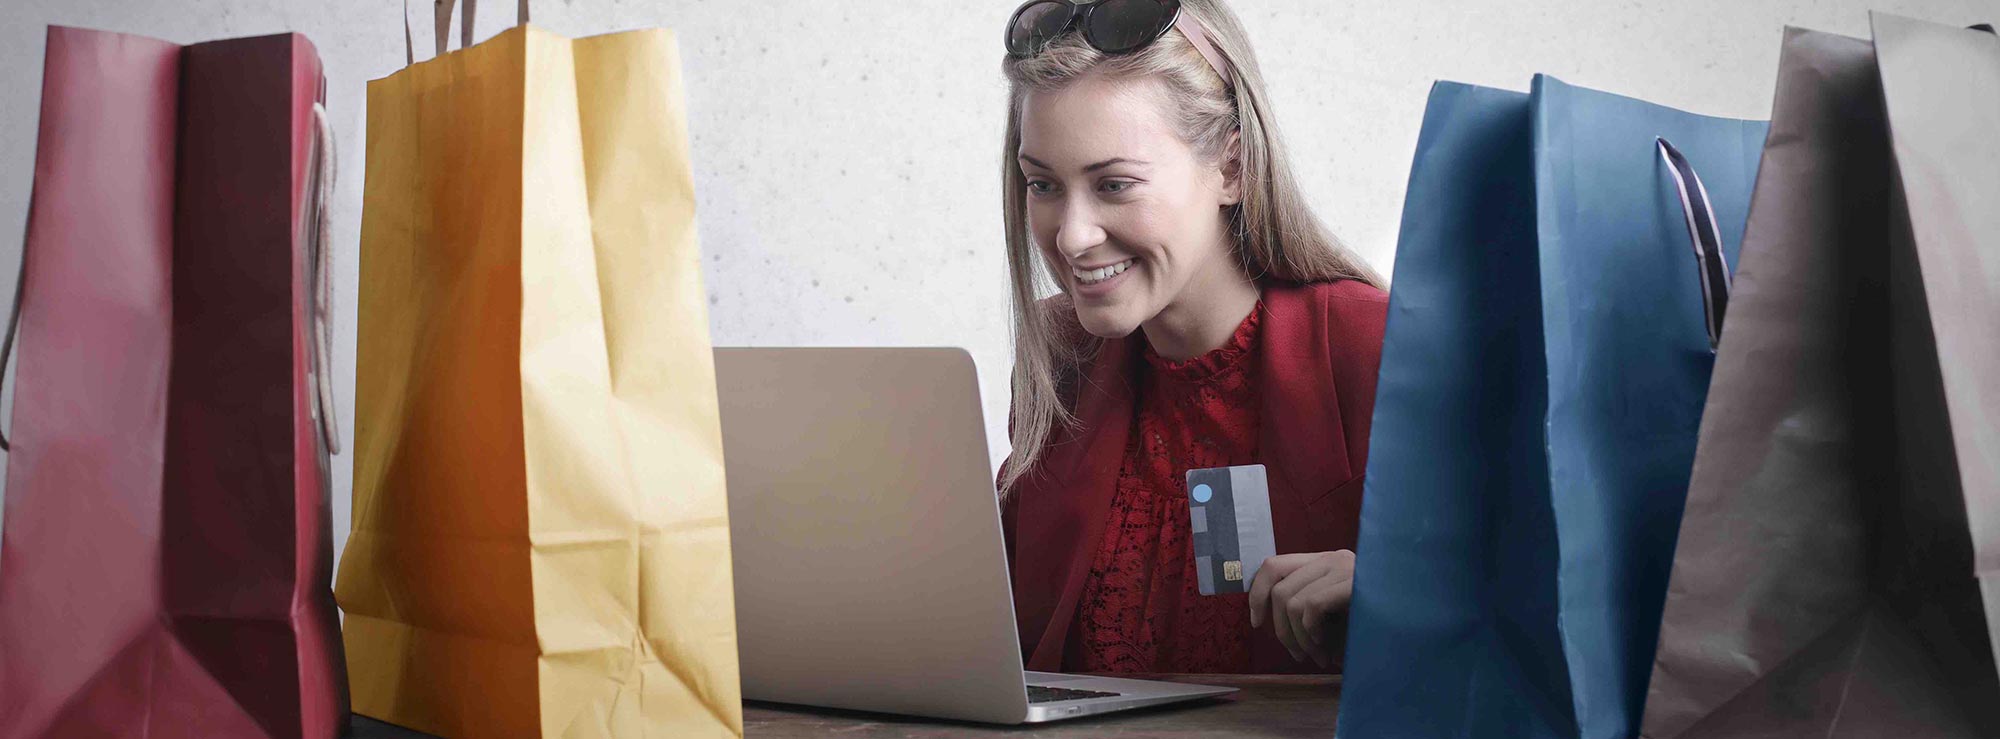 Femme souriante regardant son ordinateur entourée de plusieurs sacs